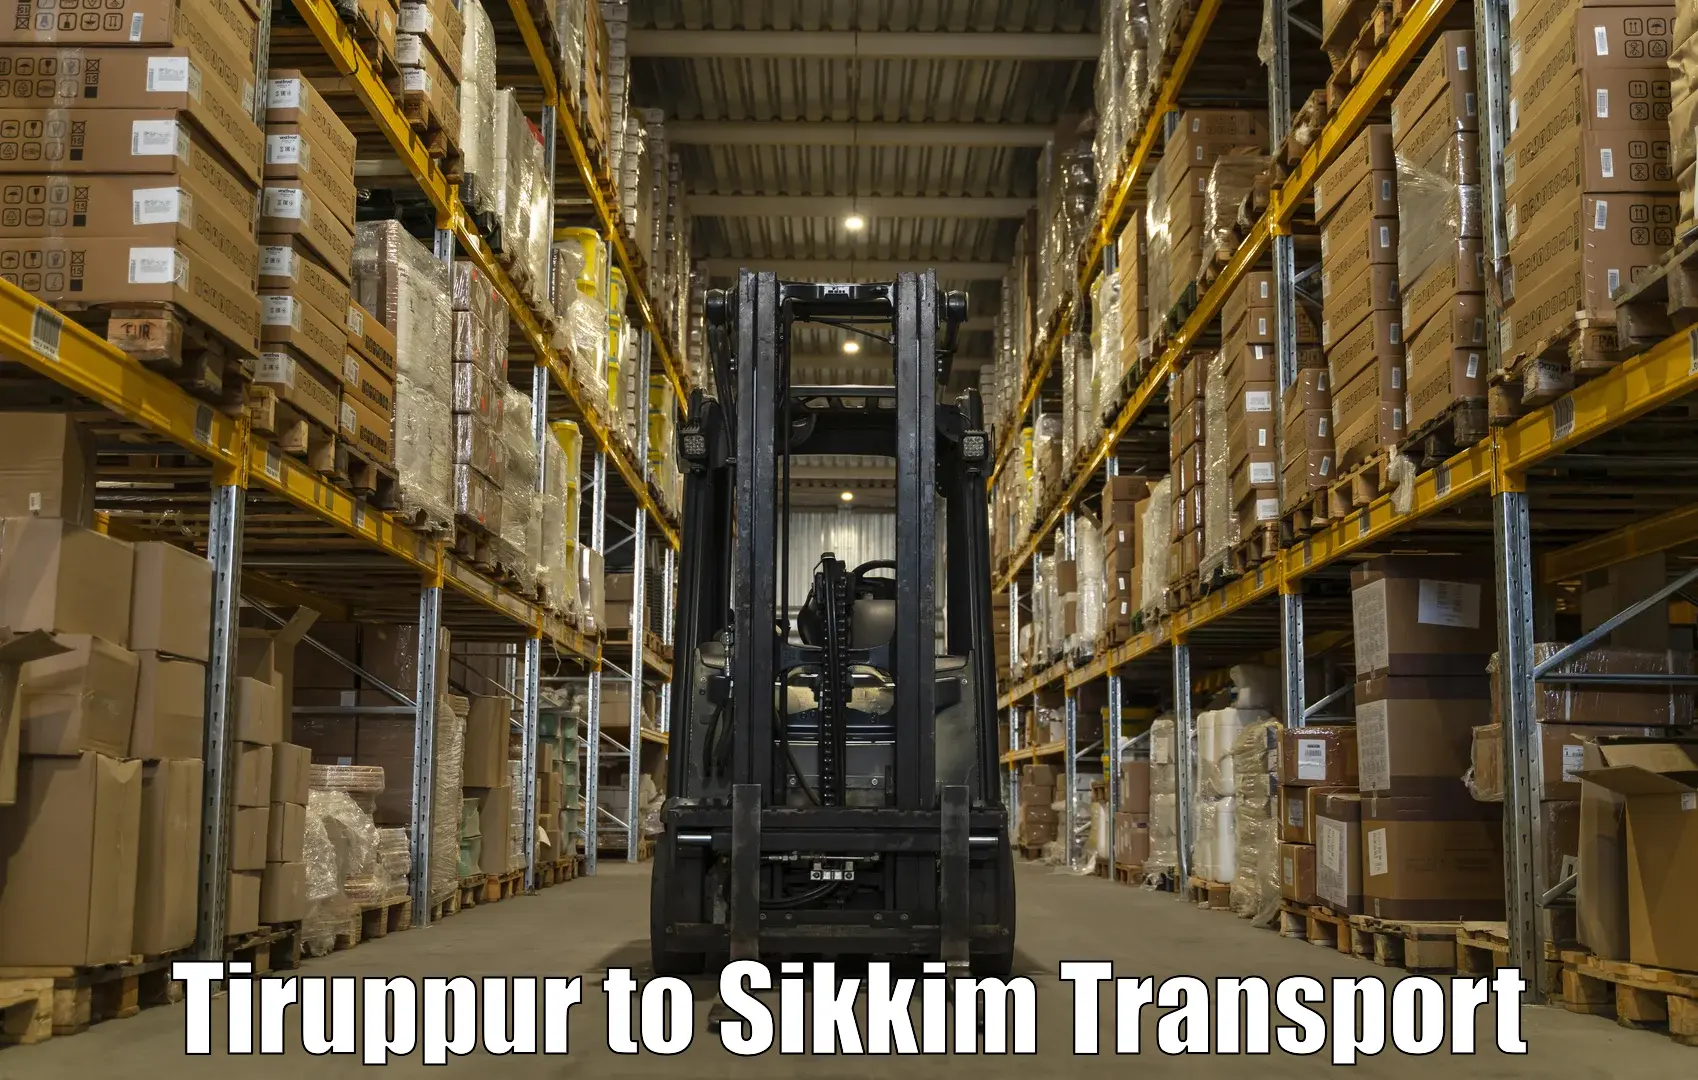 Shipping partner Tiruppur to Sikkim